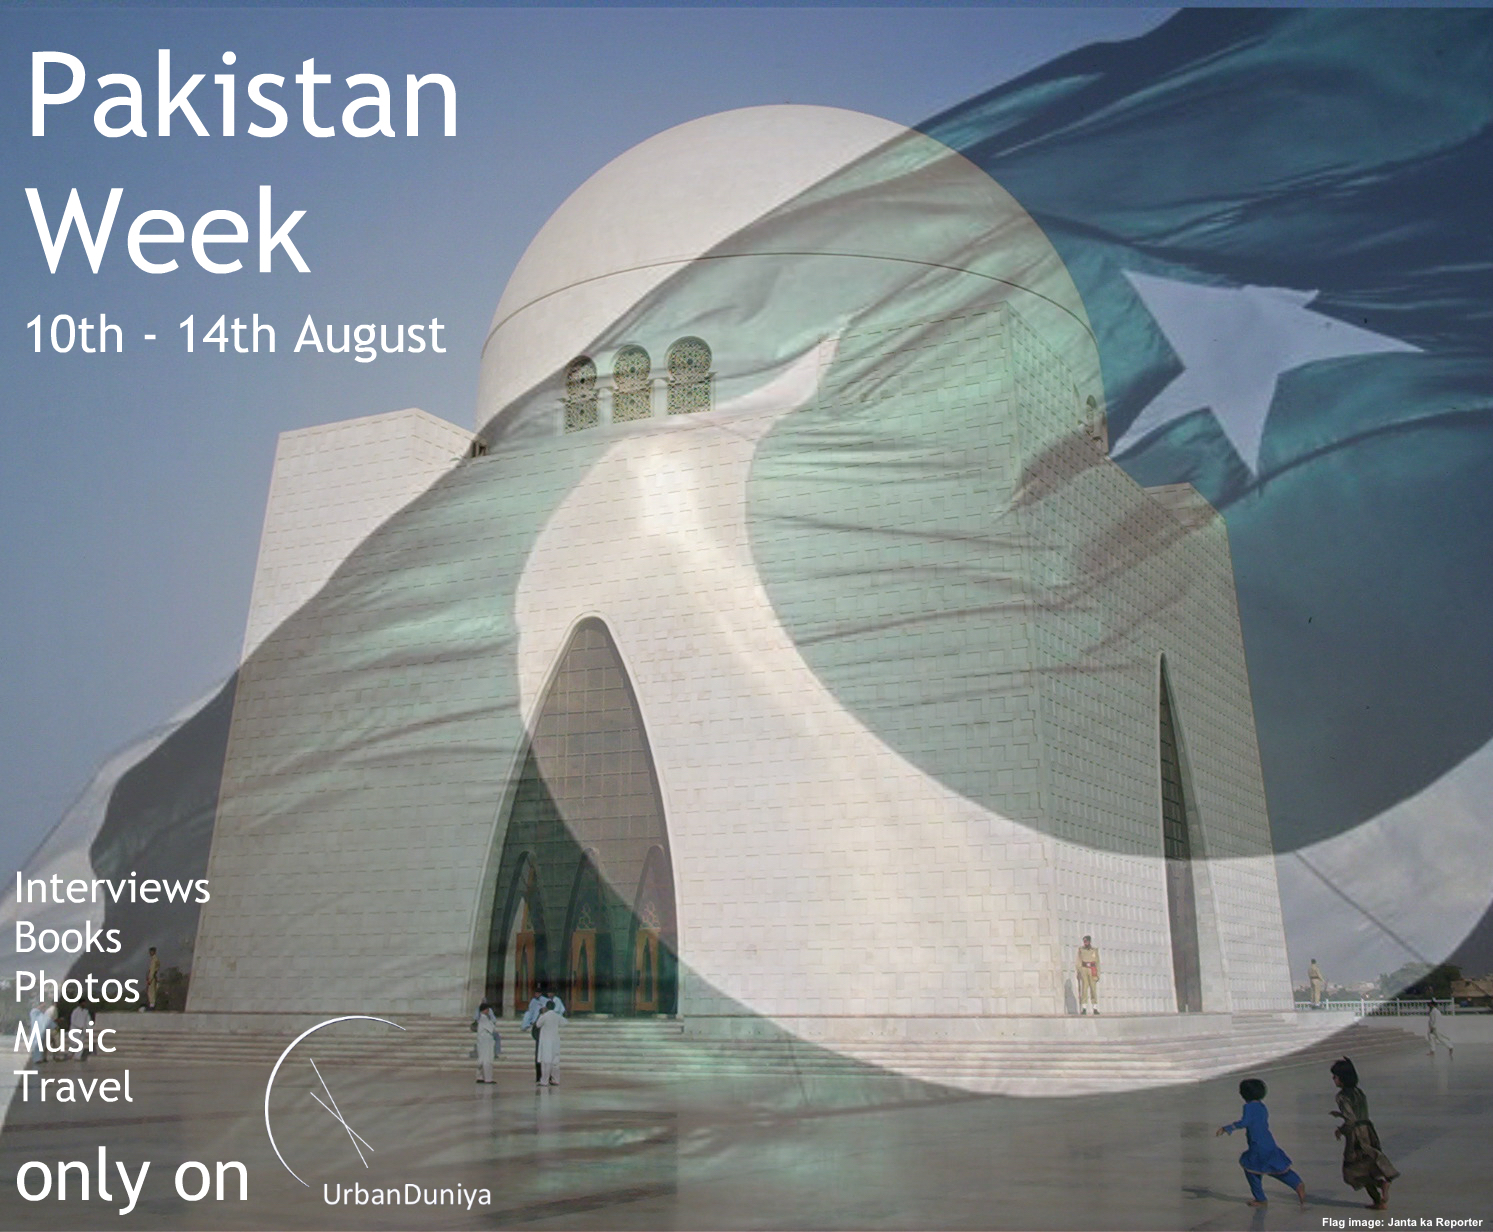 Pakistan Week on UrbanDuniya